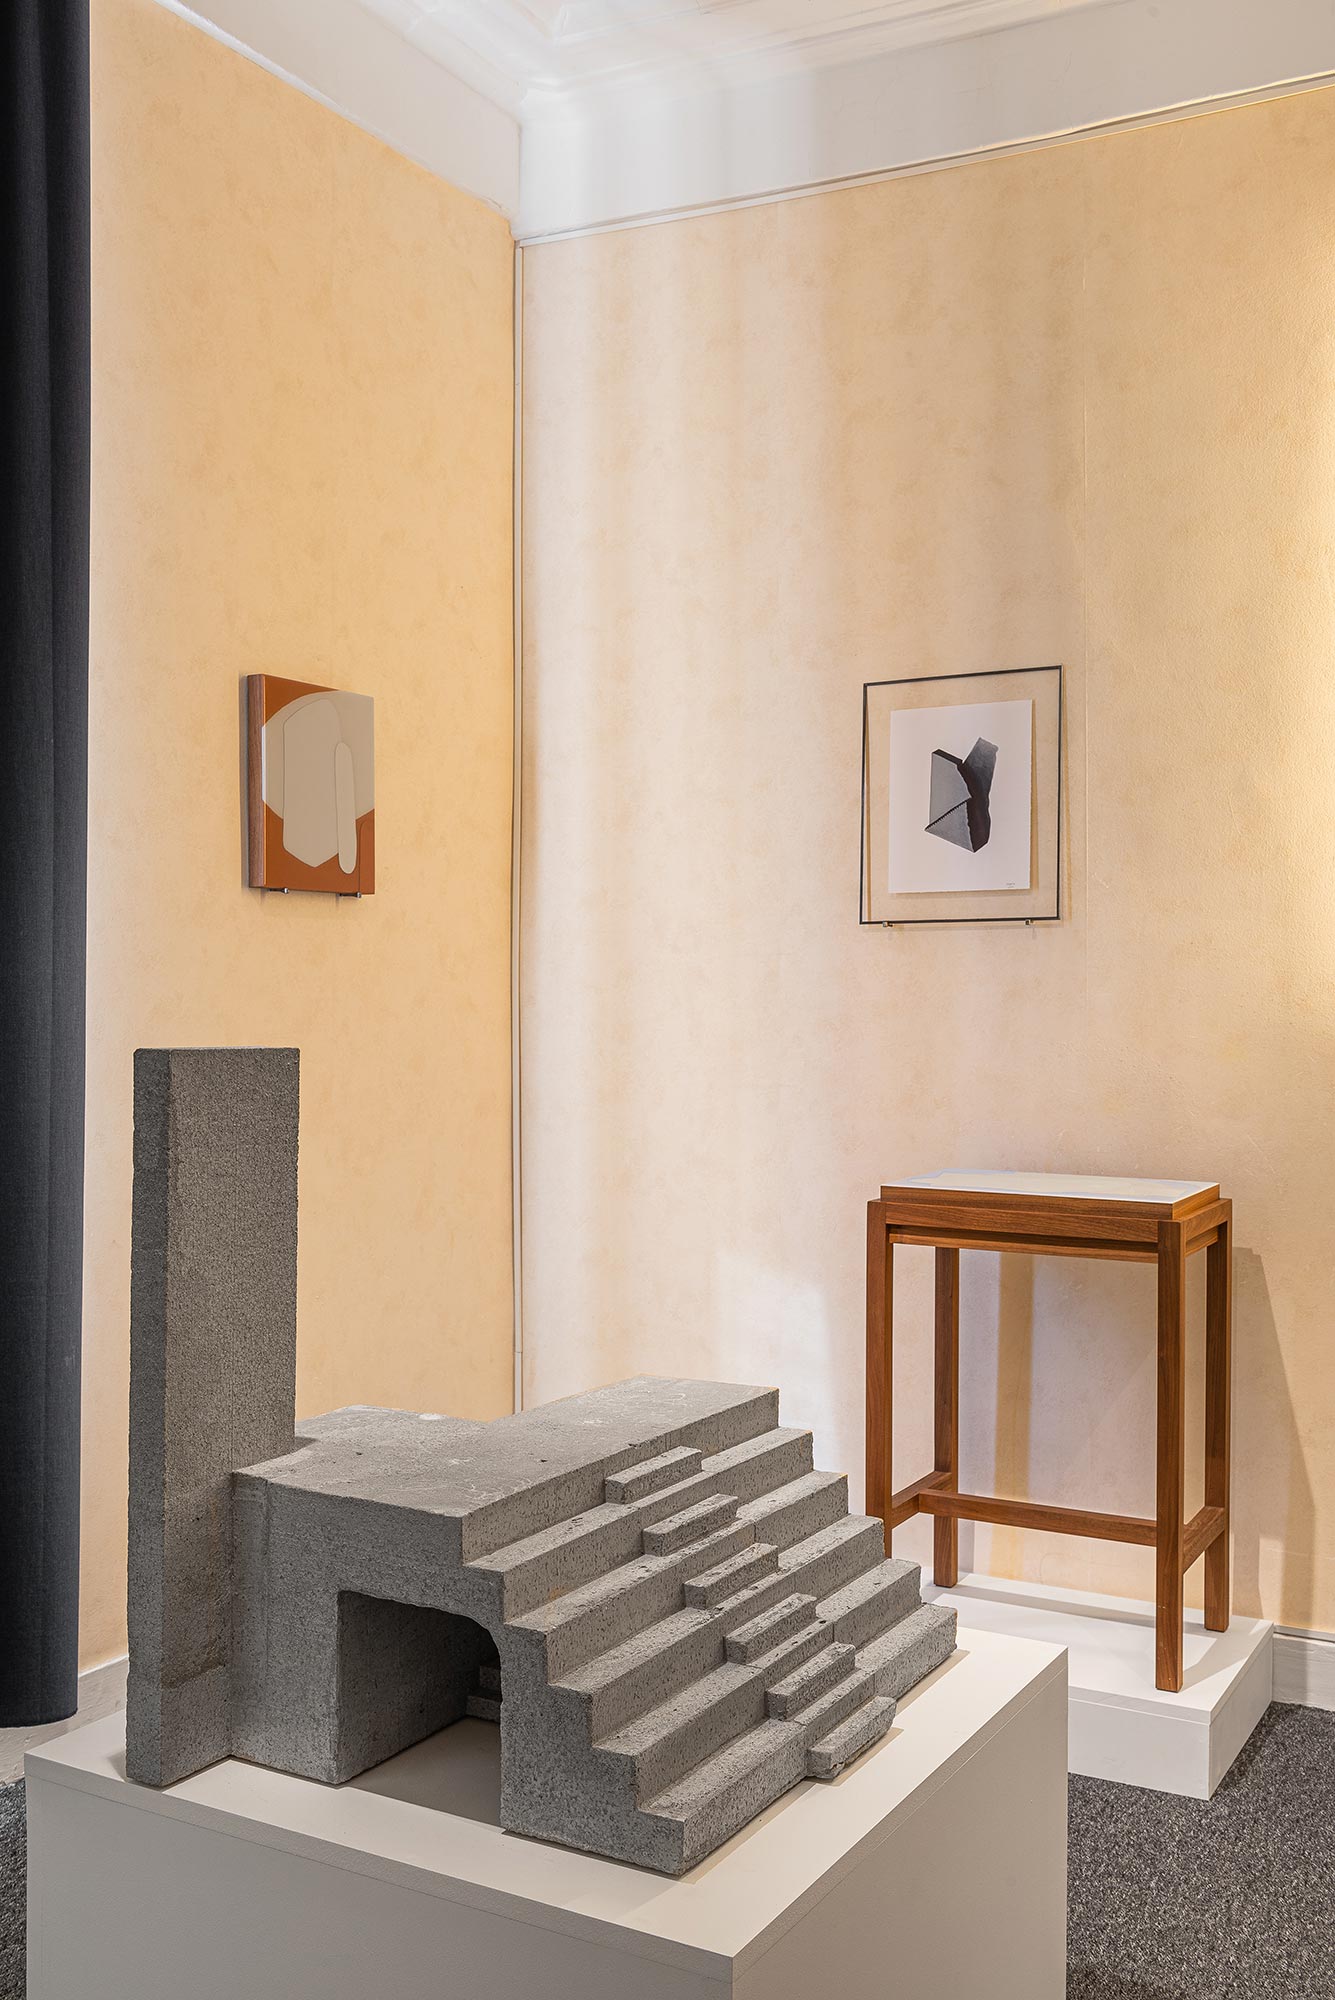 mattia listowski salon bienvenue art design objet décoration sculpture béton architecture dessin encre photographie argentique hôtel la louisiane paris 2021